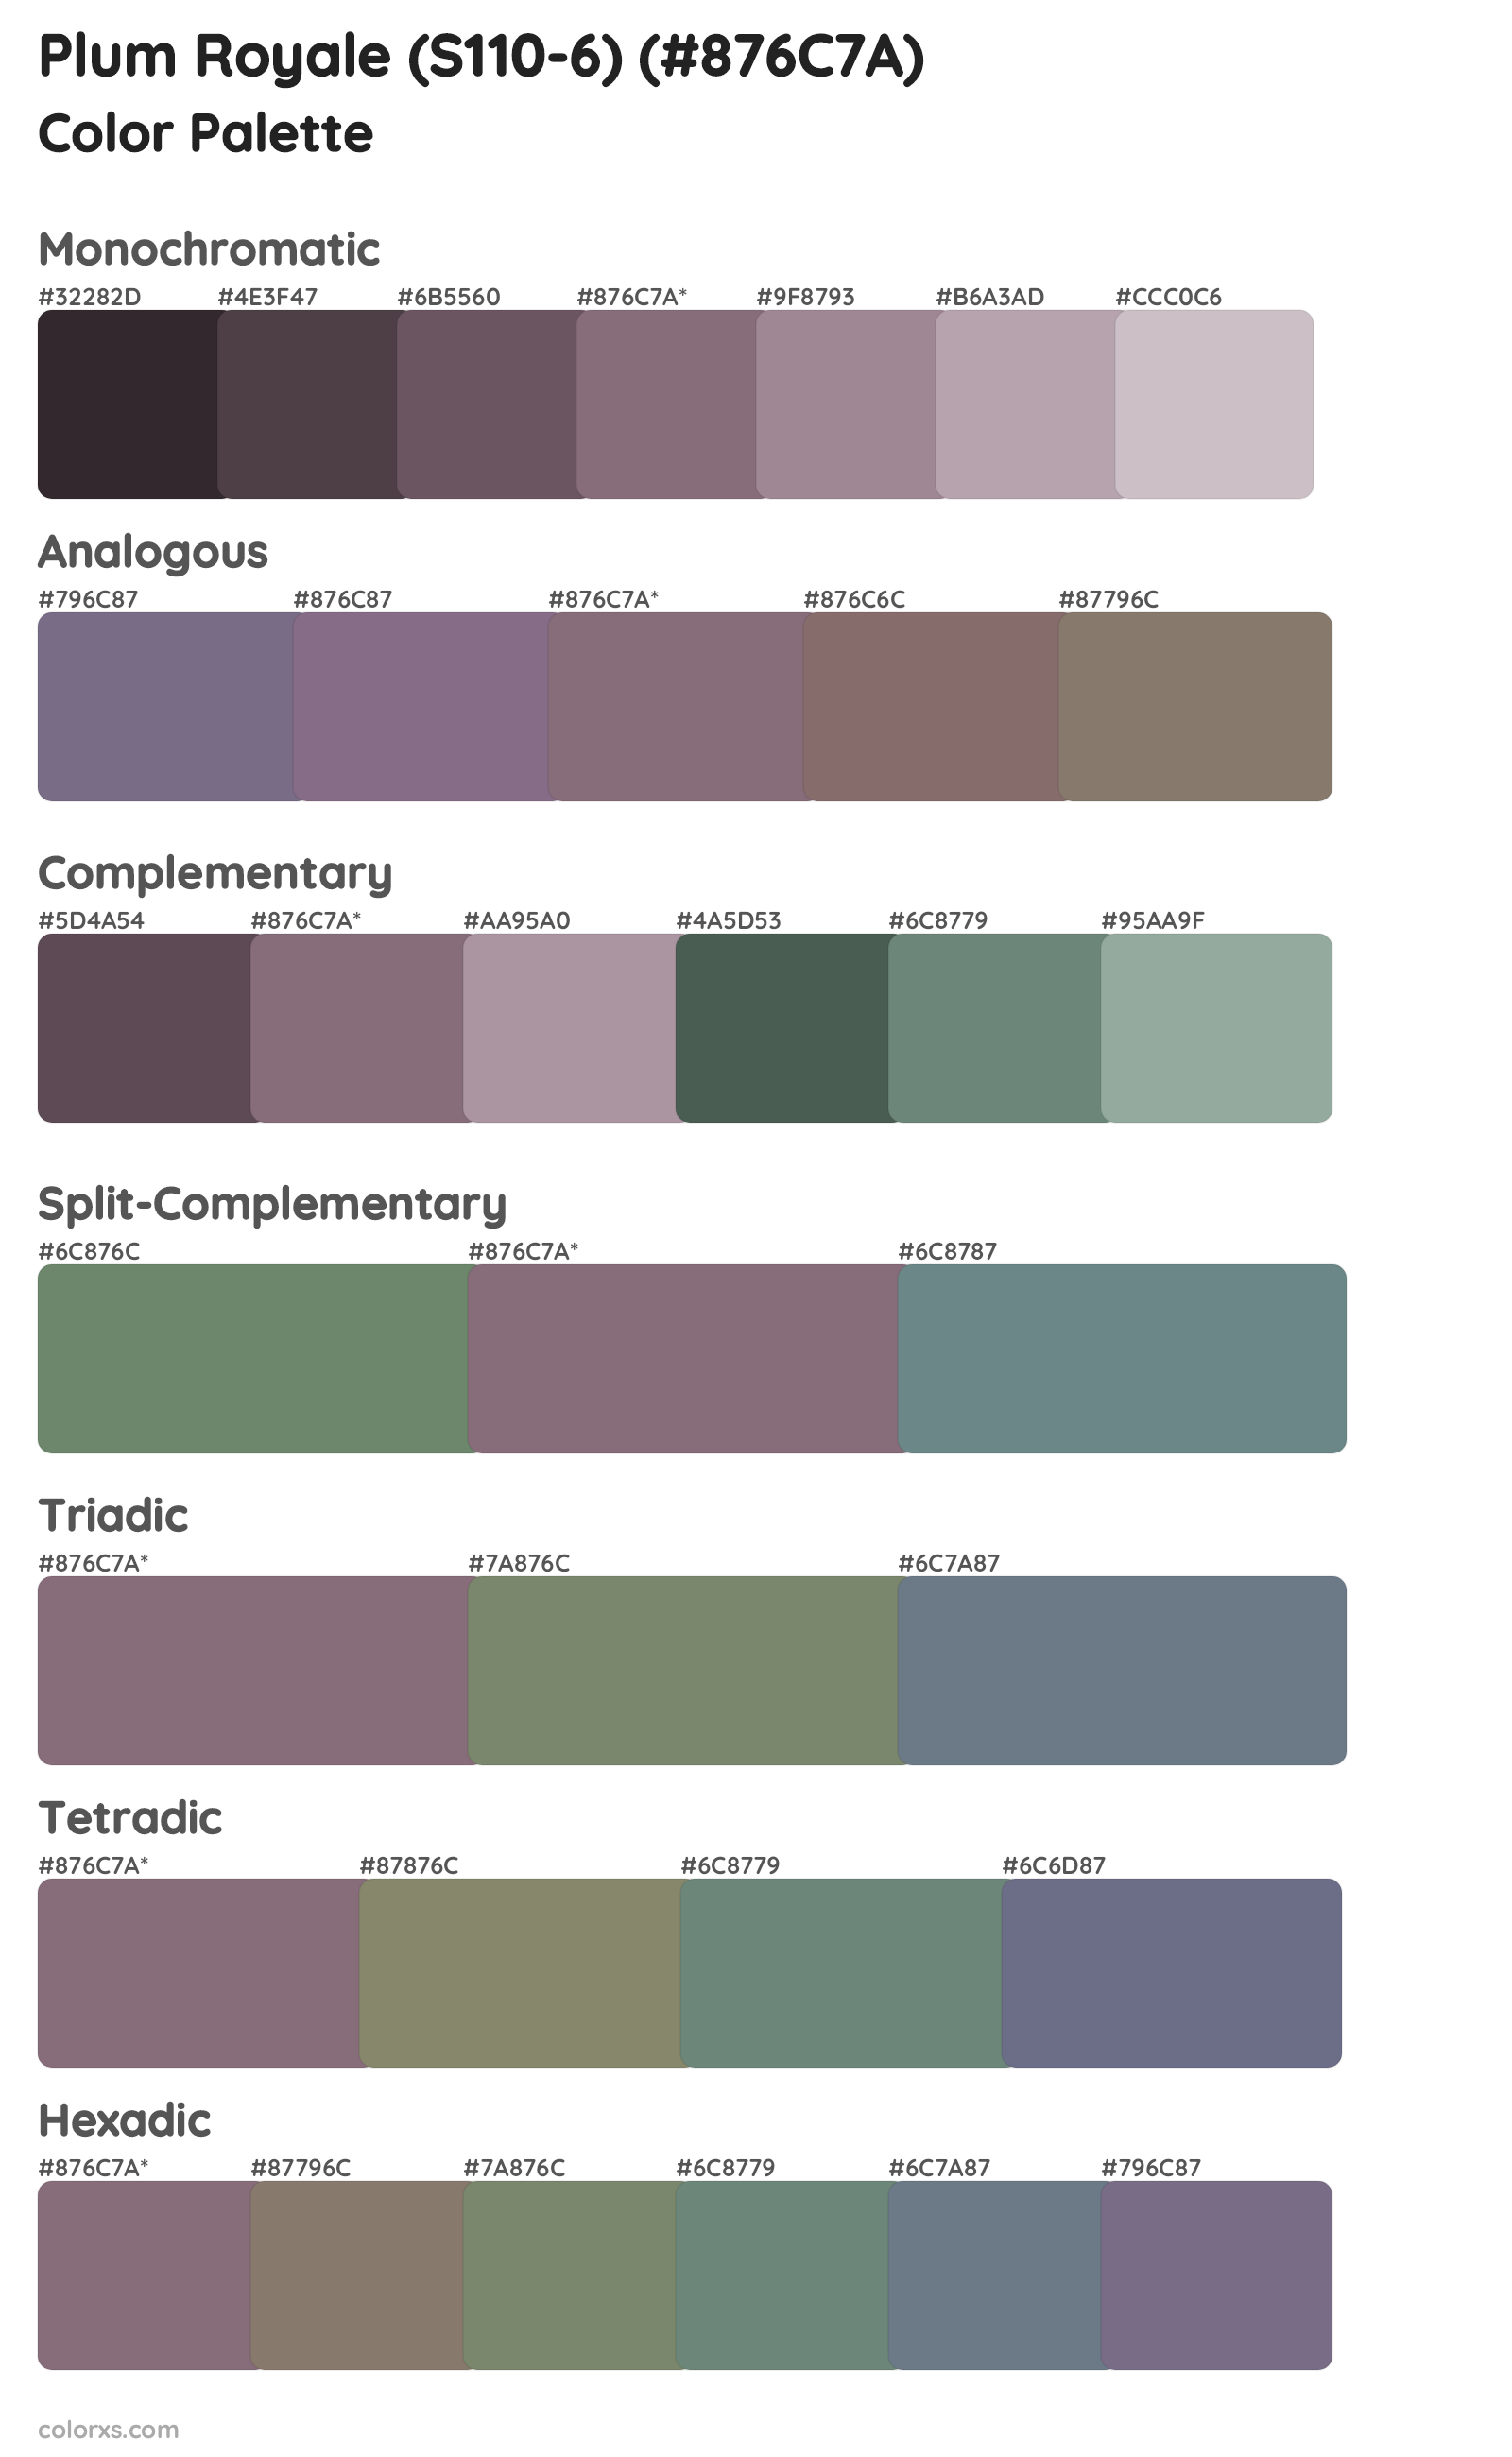 Plum Royale (S110-6) Color Scheme Palettes